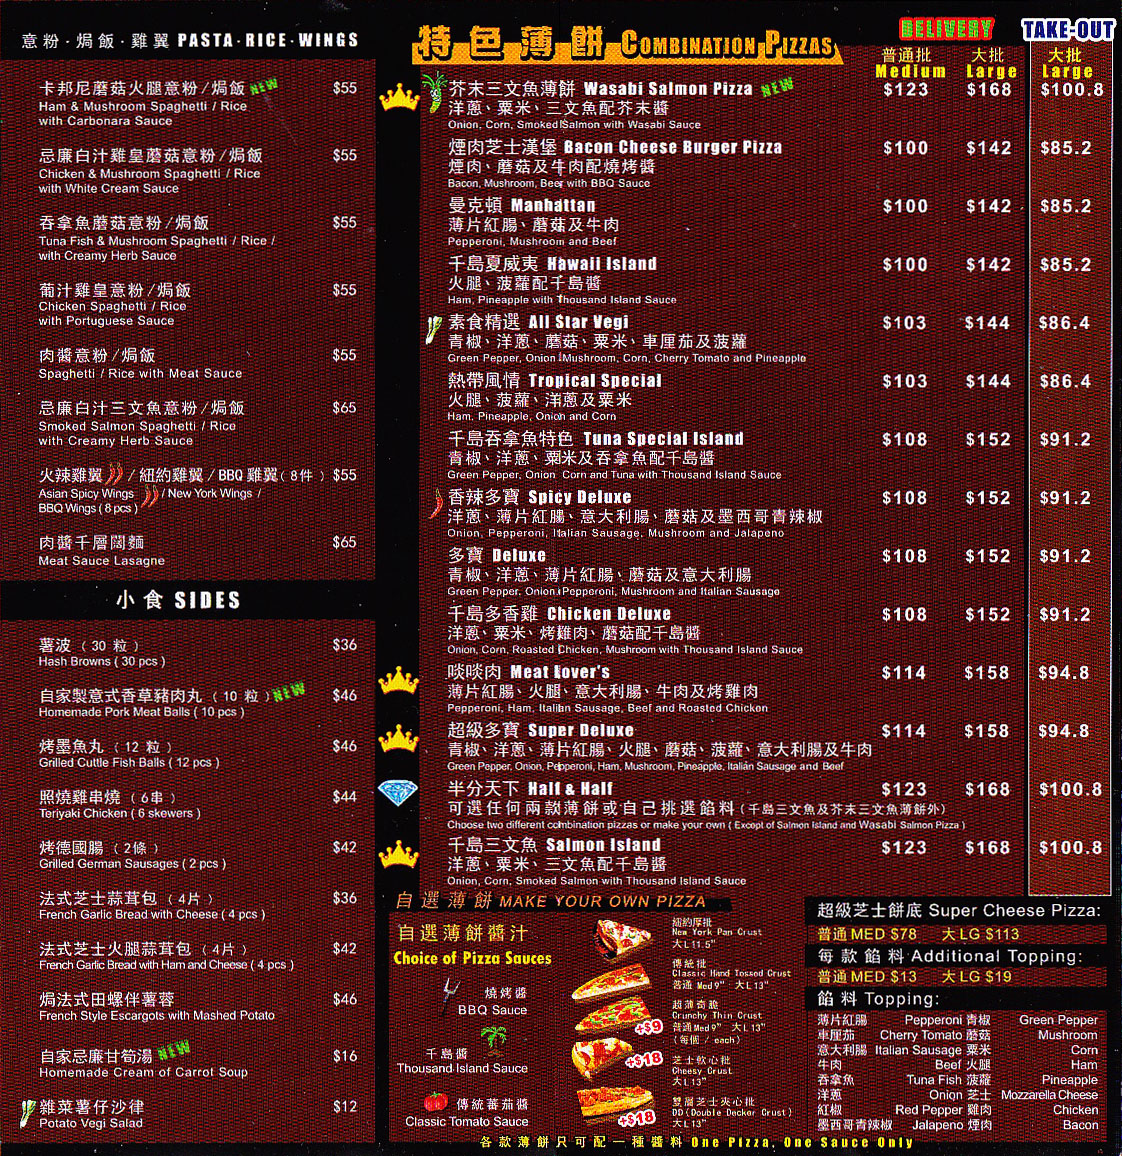 香港pizza box薄餅速遞服務 pizza box delivery menu promotion package hong kong 美食學生優惠價錢自取外紙賣服務餐劵餐單特價格餐牌價目表